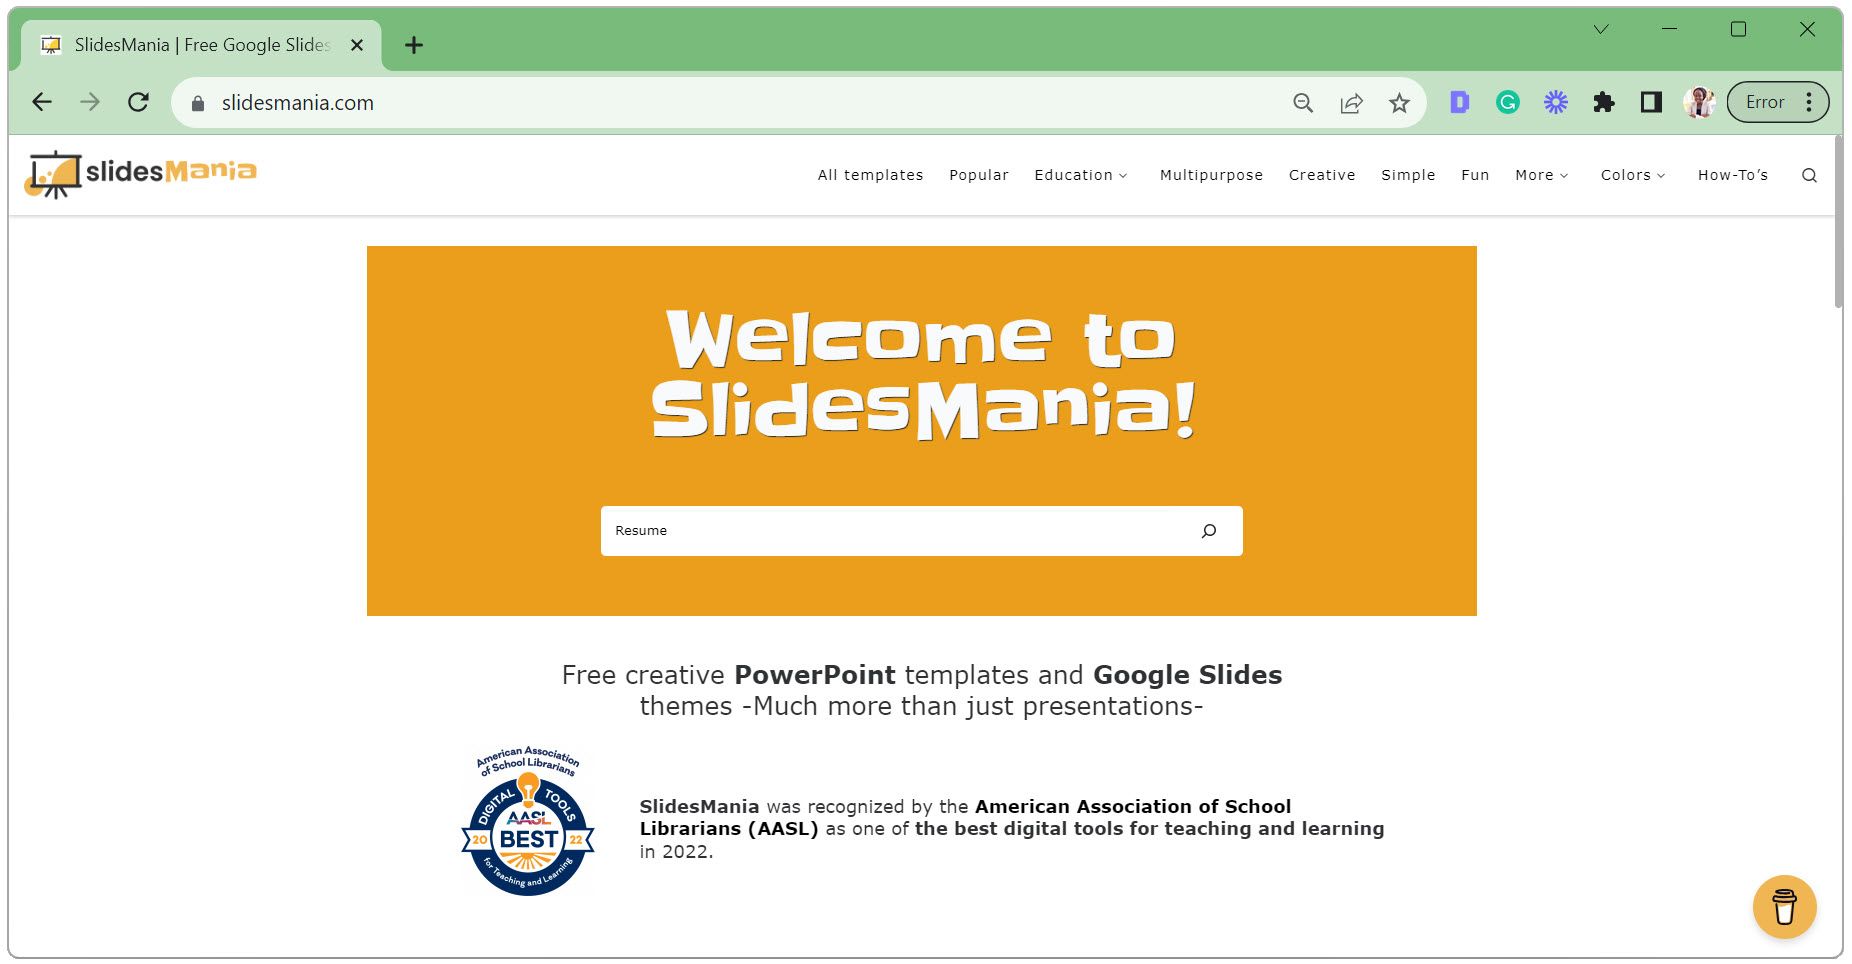 Ingresa Currículum en la barra de búsqueda de SlidesMania